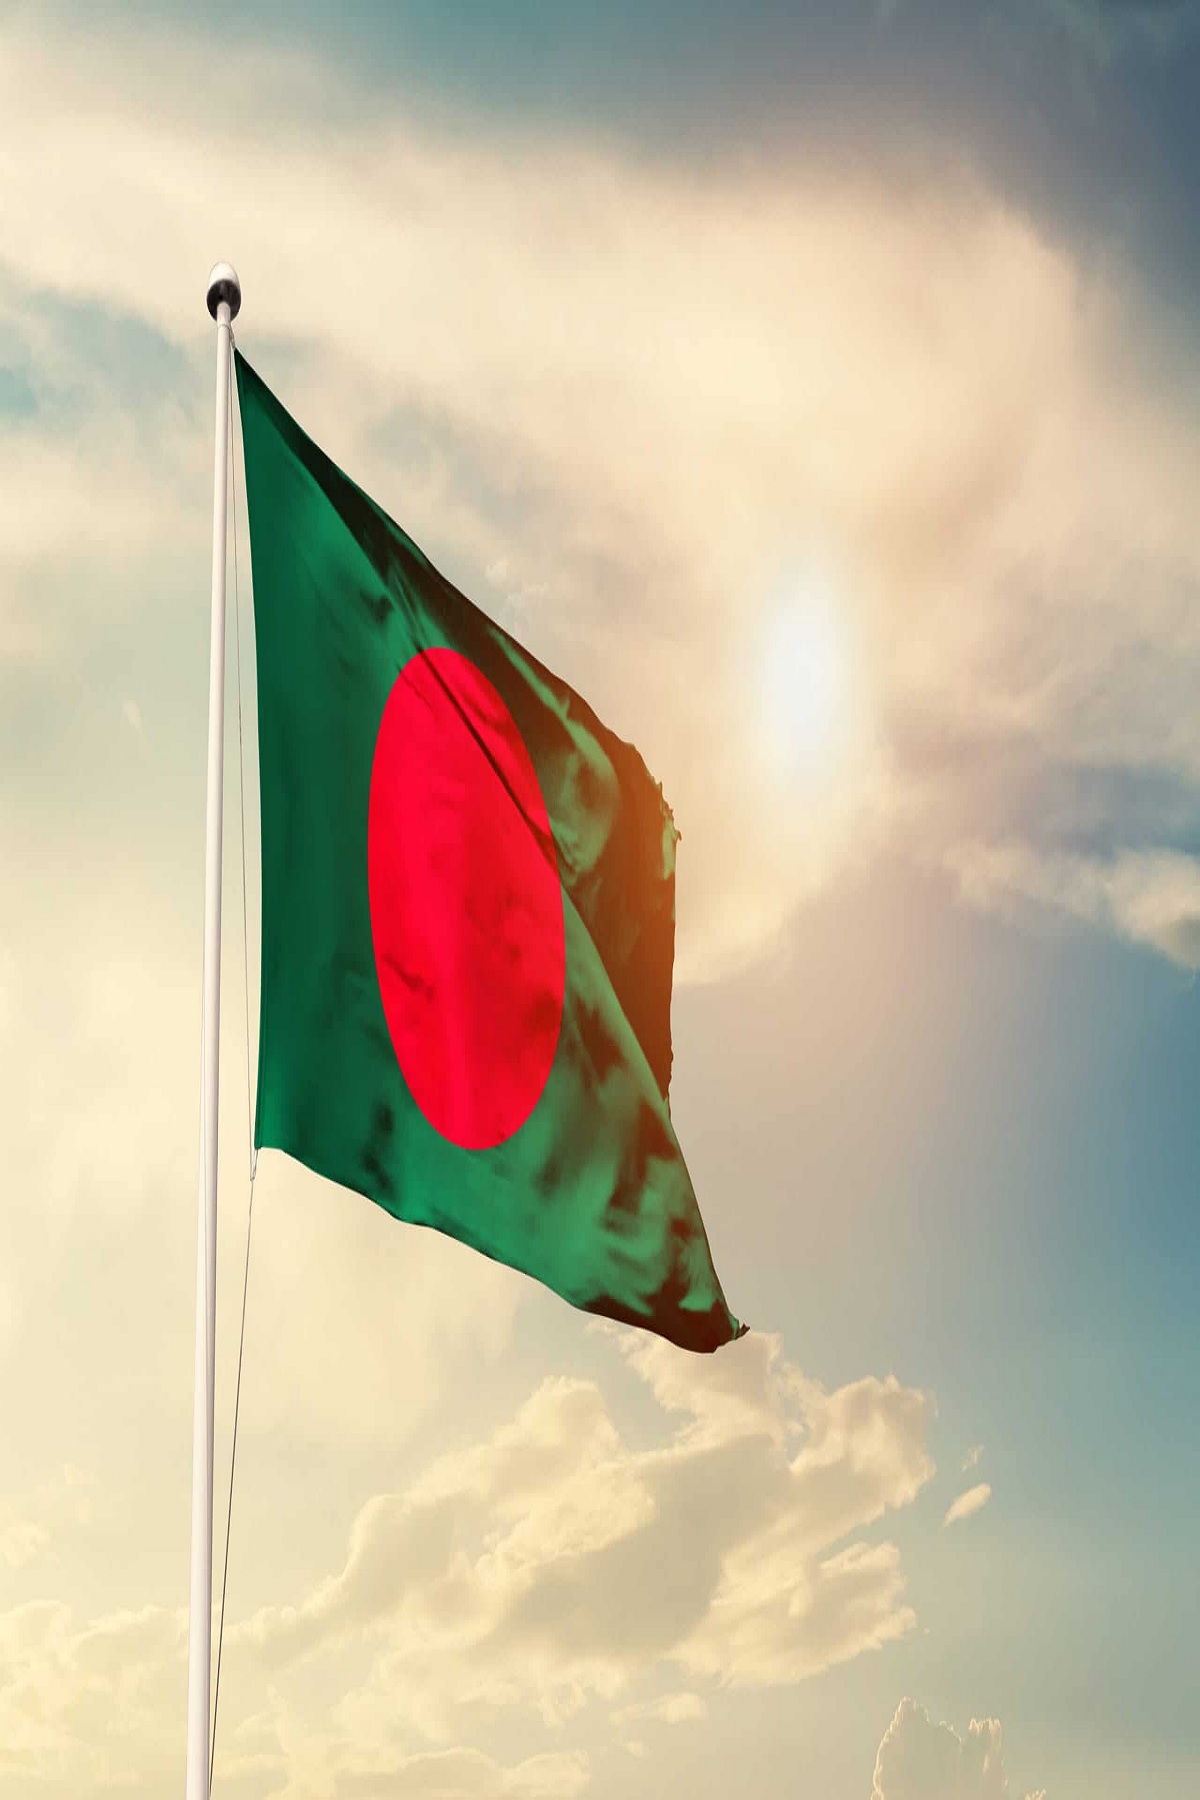 Bangladesh Financial Crisis: श्रीलंका के बाद अब कंगाली की कगार पर भारत का ये पड़ोसी देश, IMF से मांगा कर्ज